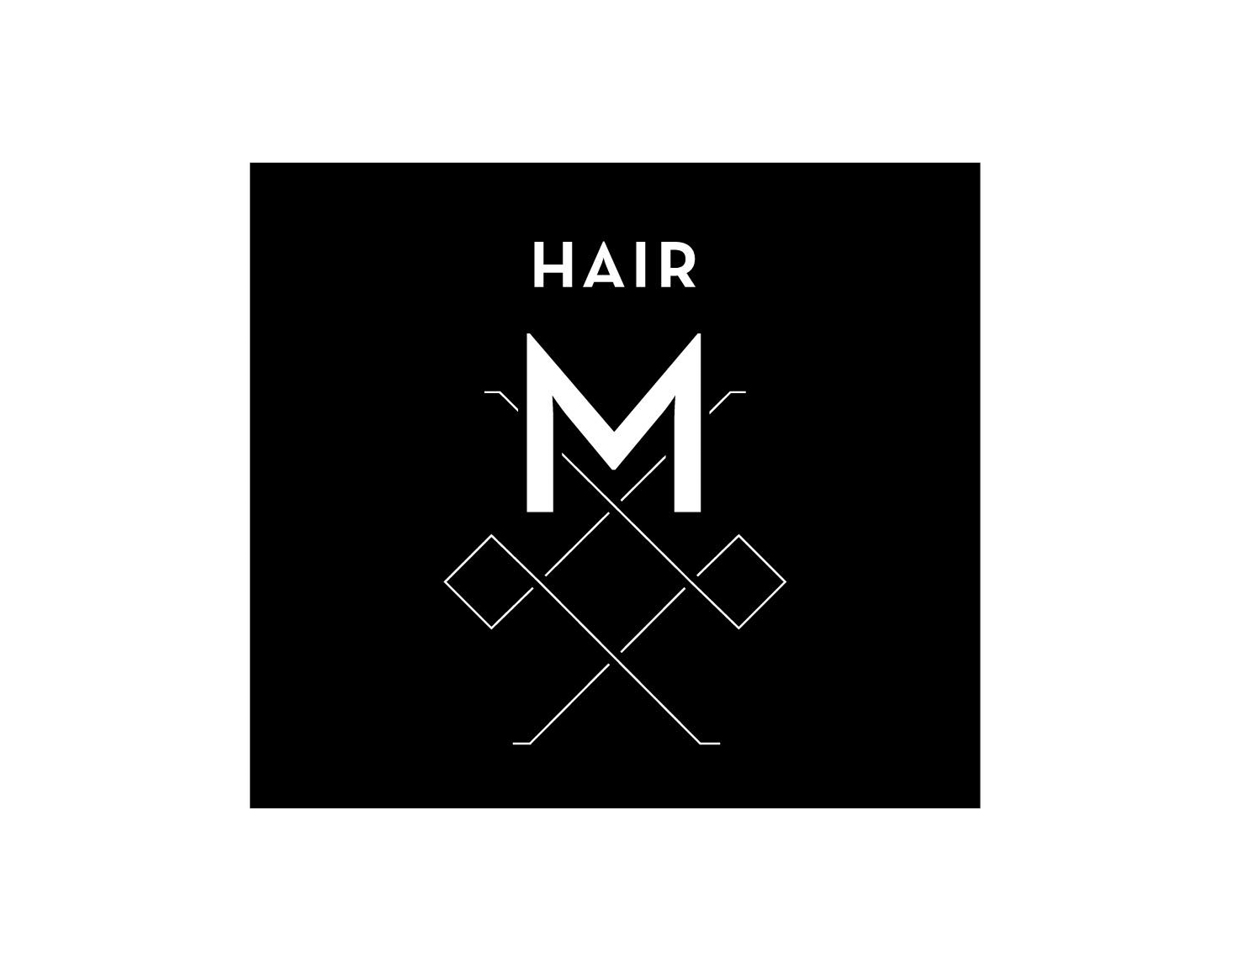 Hair M